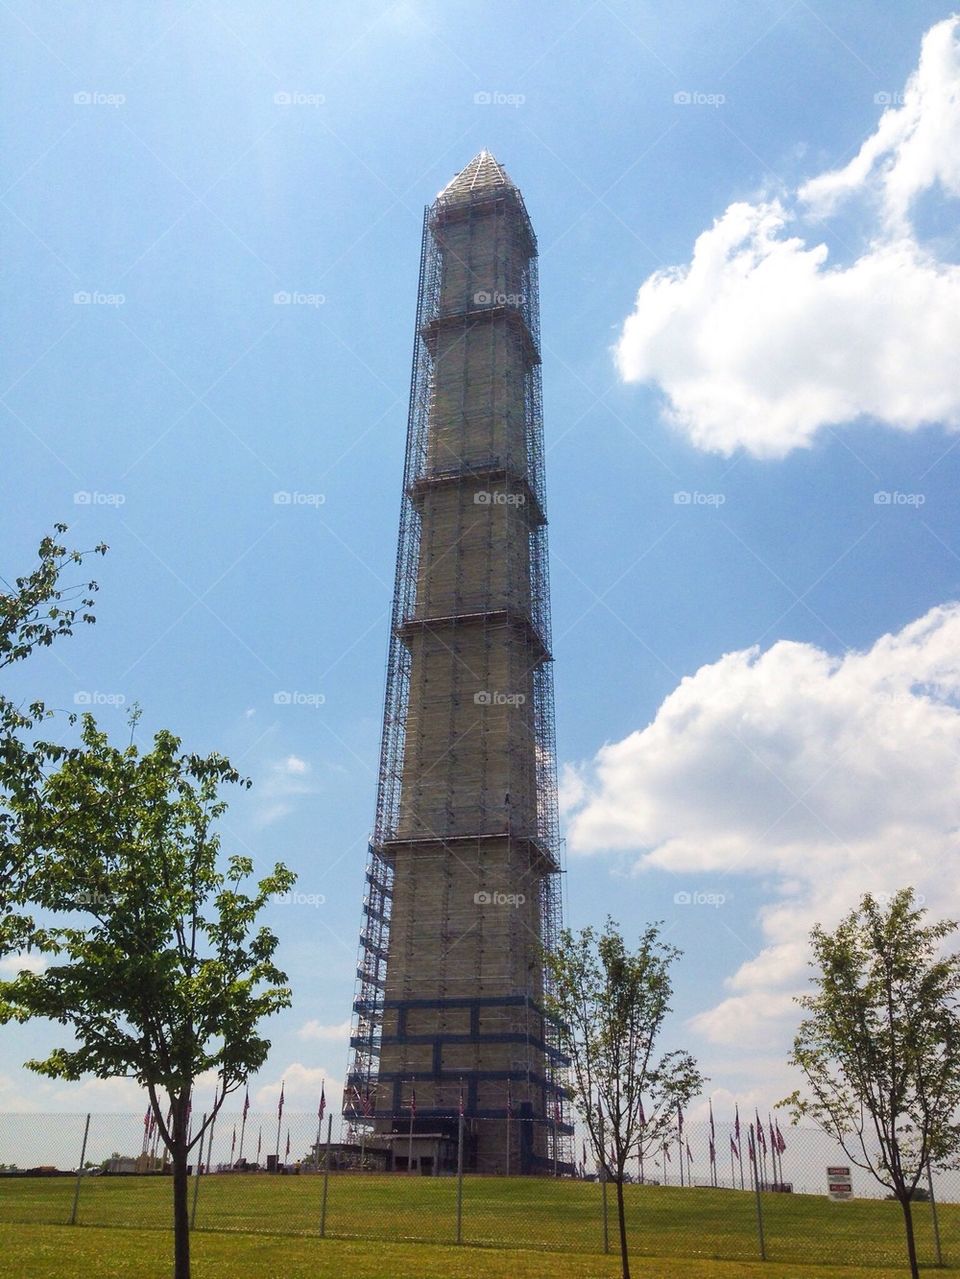 Washington Monument during Construction